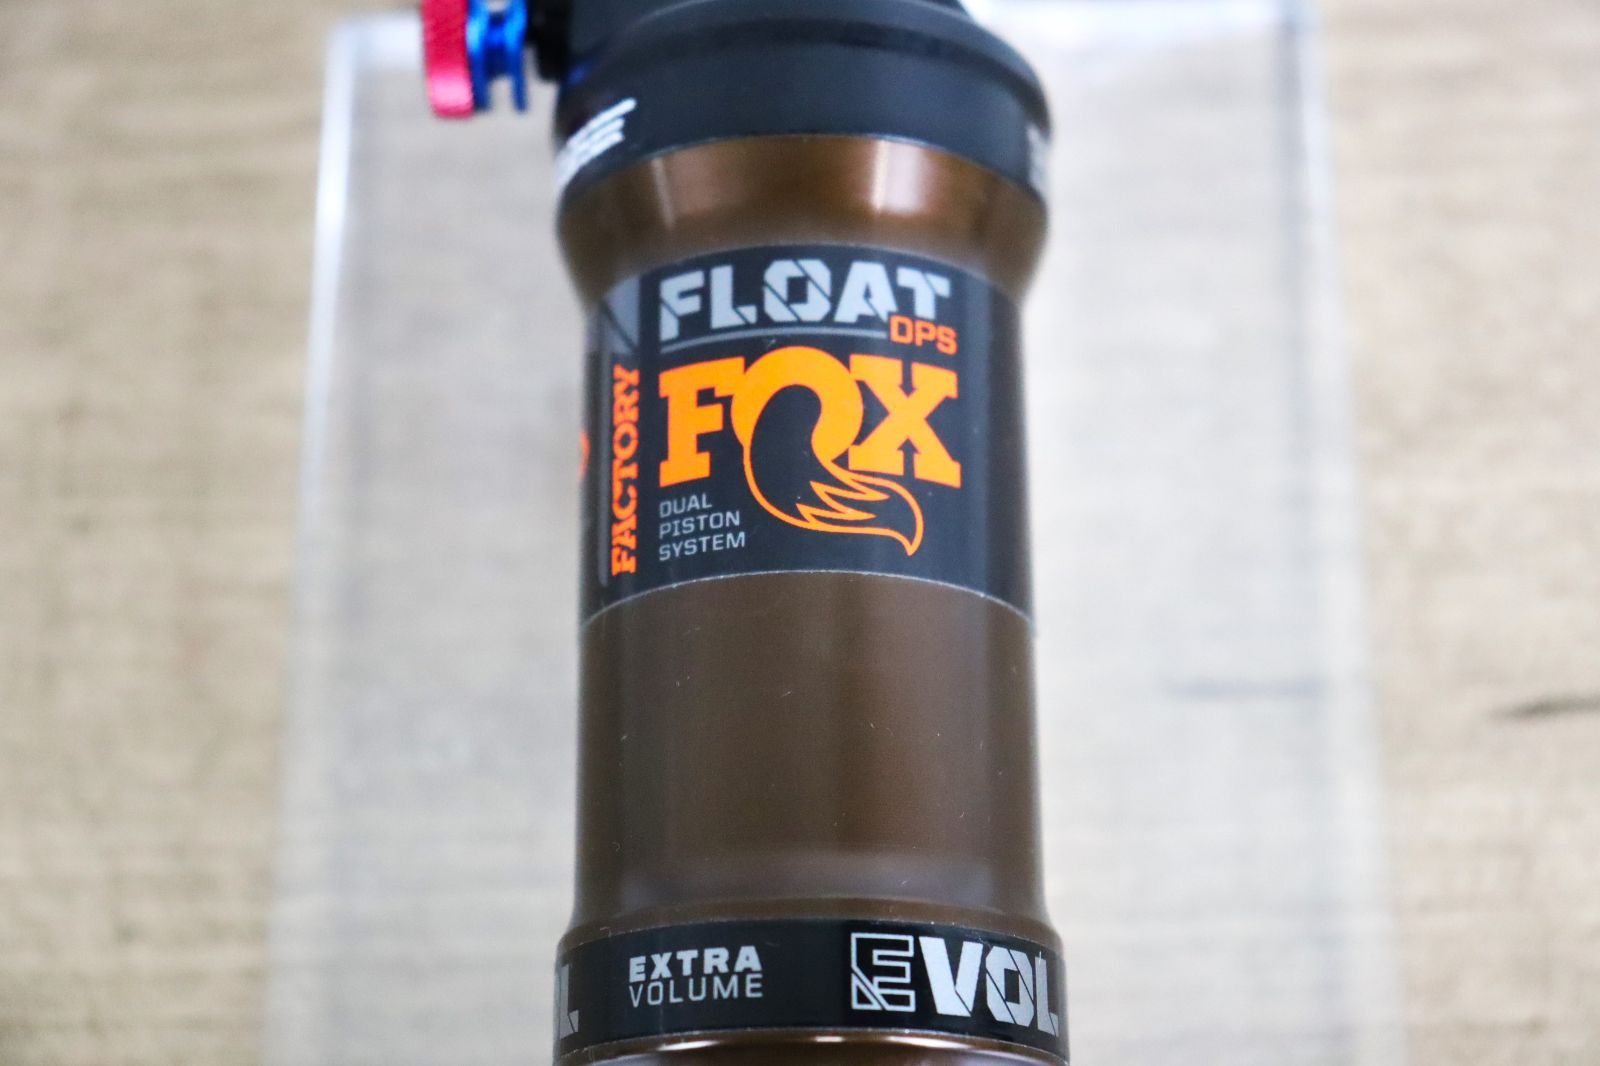 4 新品 FOX FLOAT DPS FACTORY KASHIMA COAT フォックス フロート ファクトリーシリーズ スタンダード  190×50mm 純正カシマコート リアショック リアサスペンション cicli17 - メルカリ